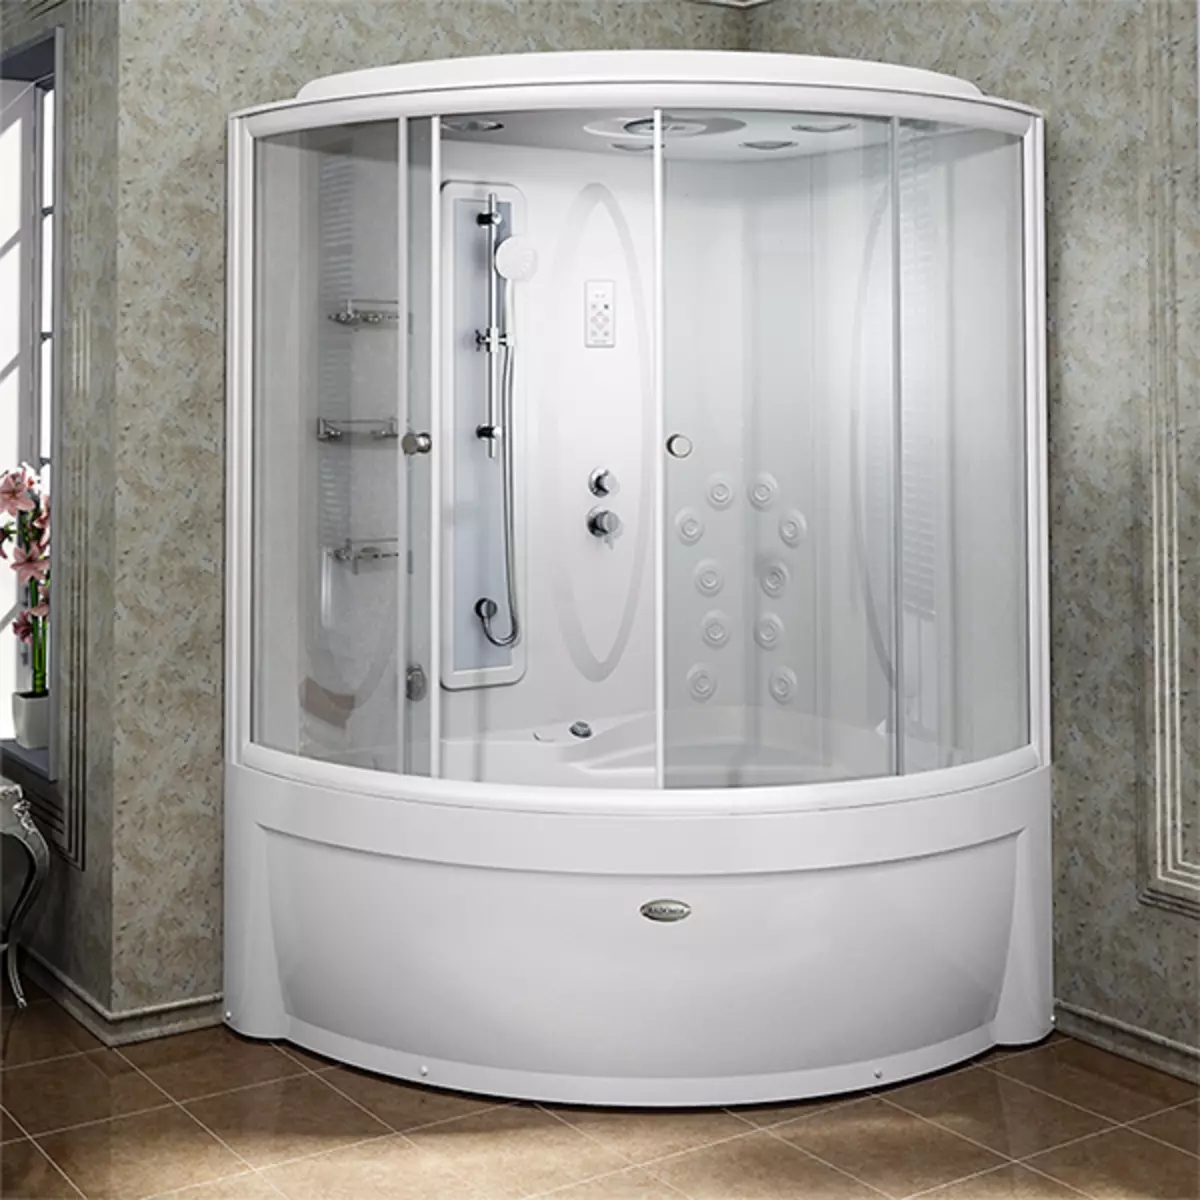 Cabine doccia APPOLO: cabine da terra con bagno e altri modelli. I loro vantaggi e svantaggi. Come scegliere una cabina? 10338_20